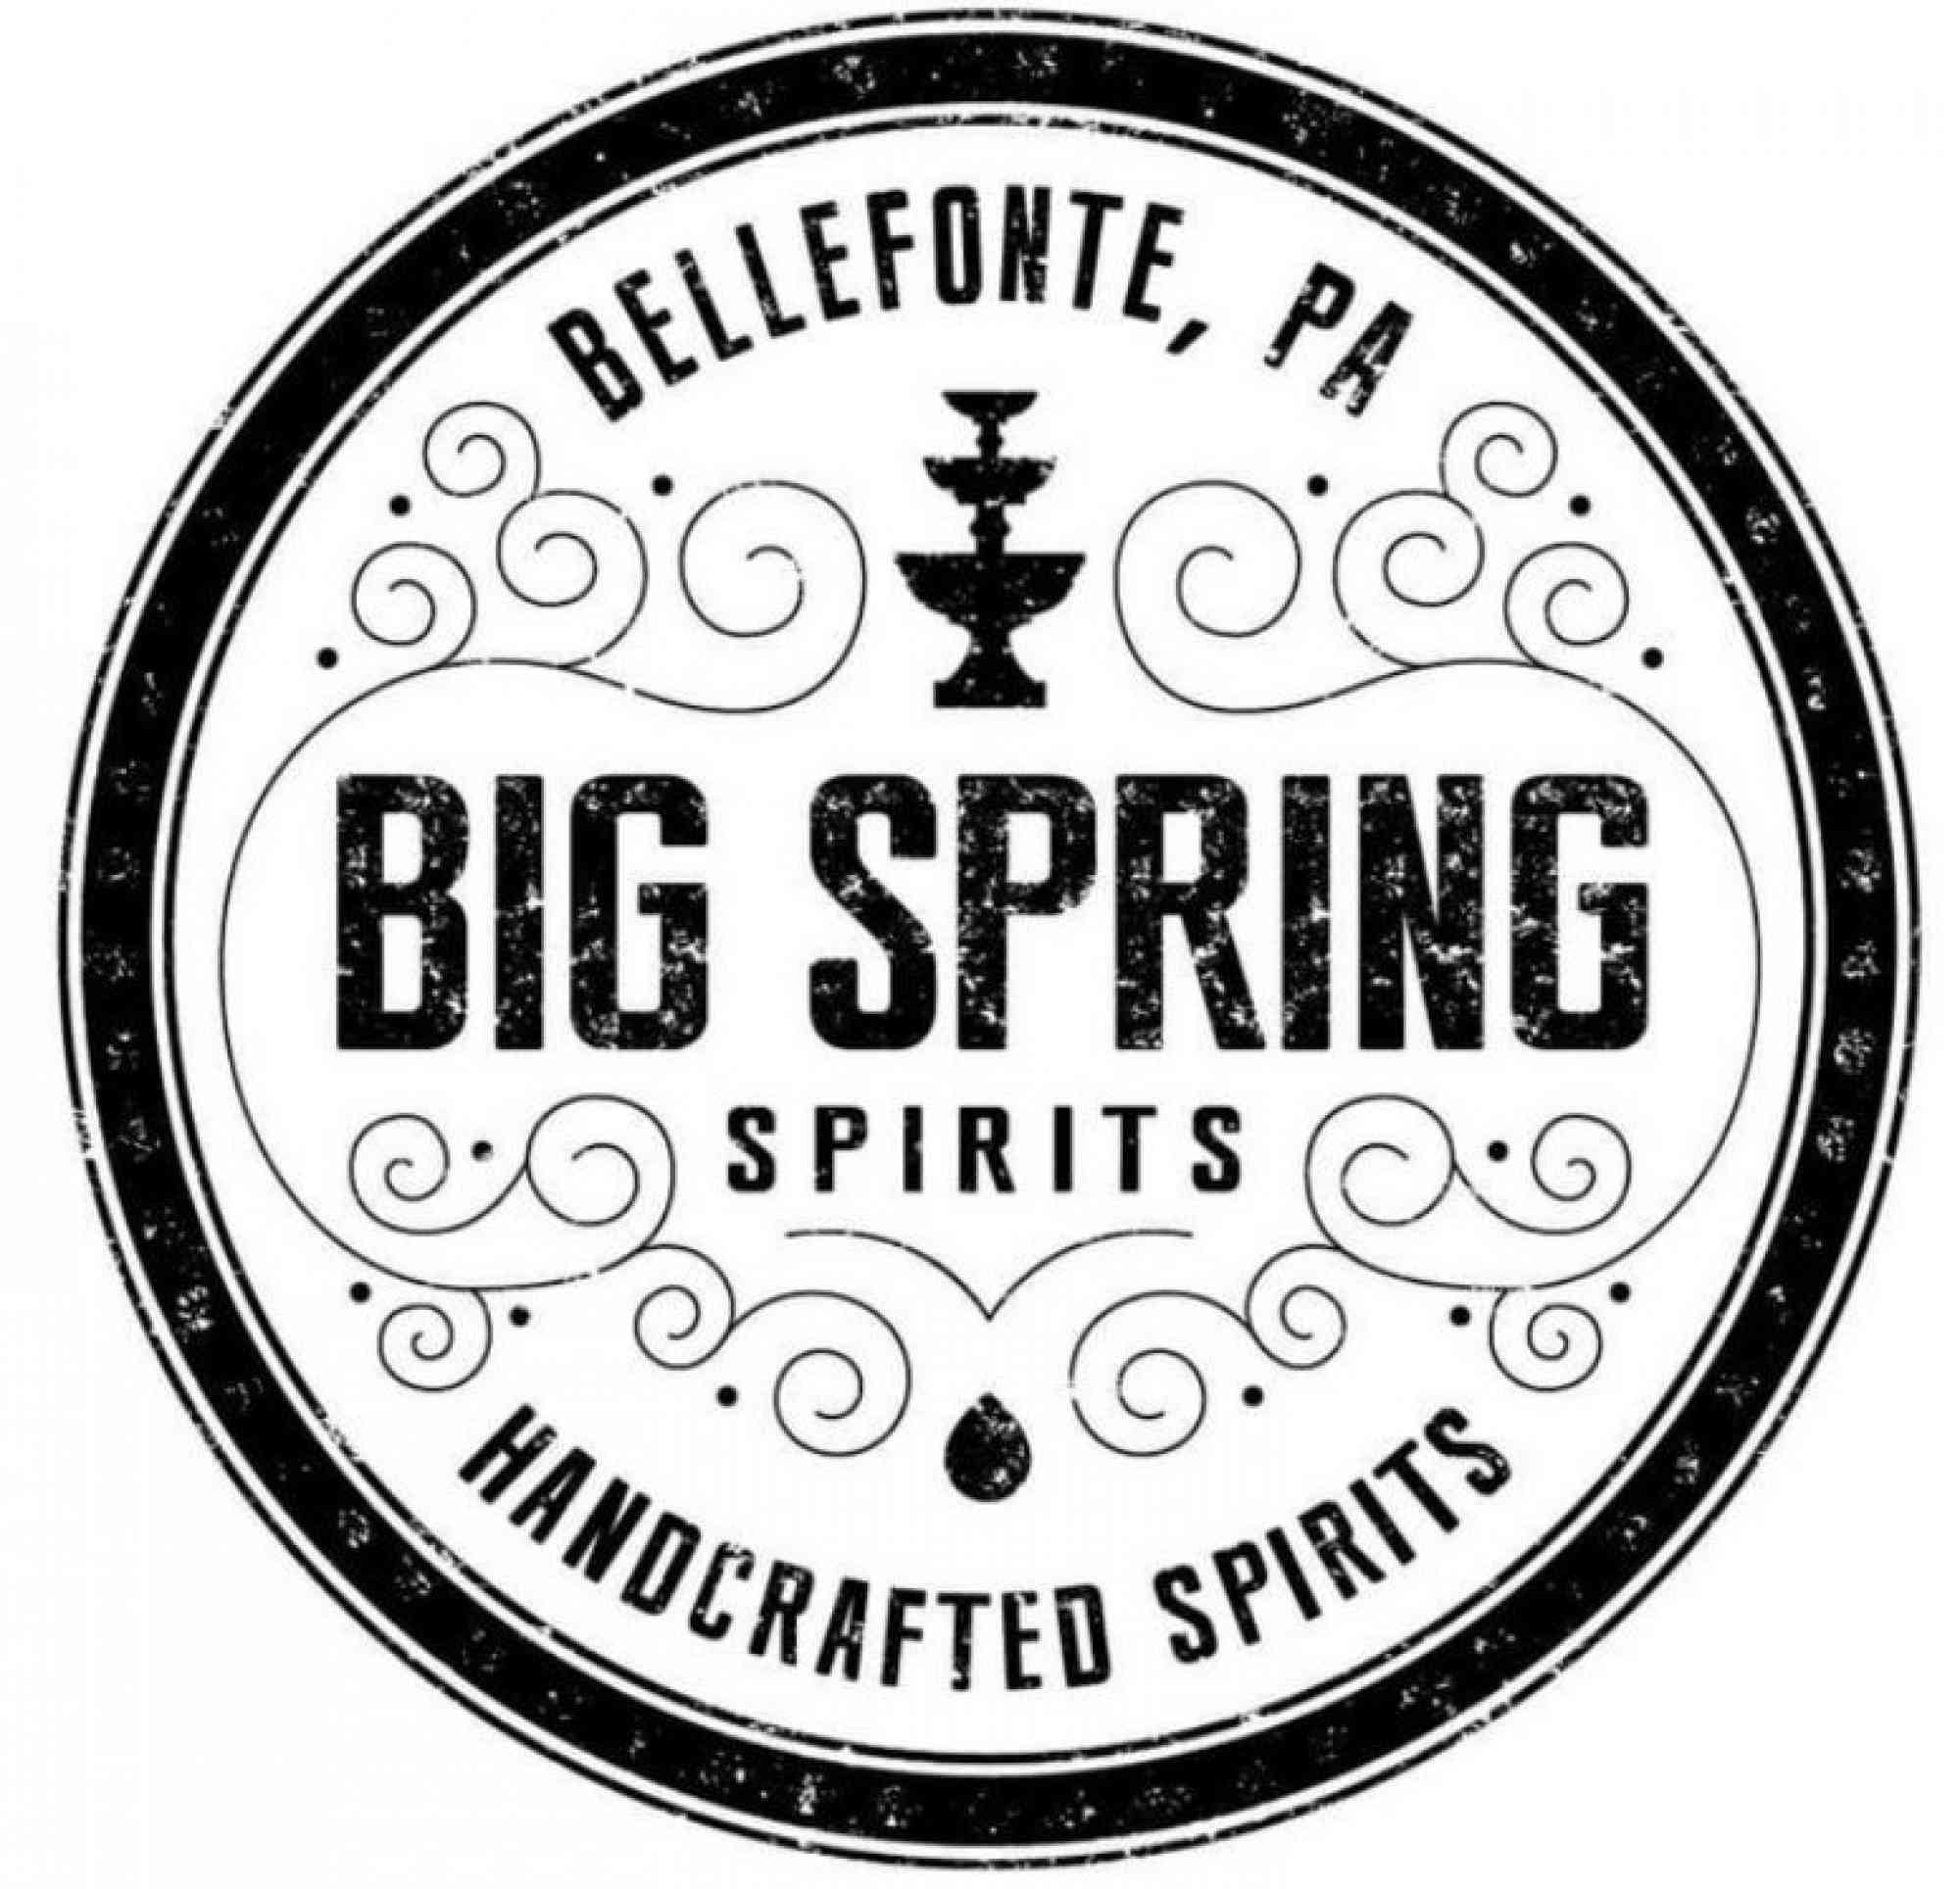 Big spring spirits logo